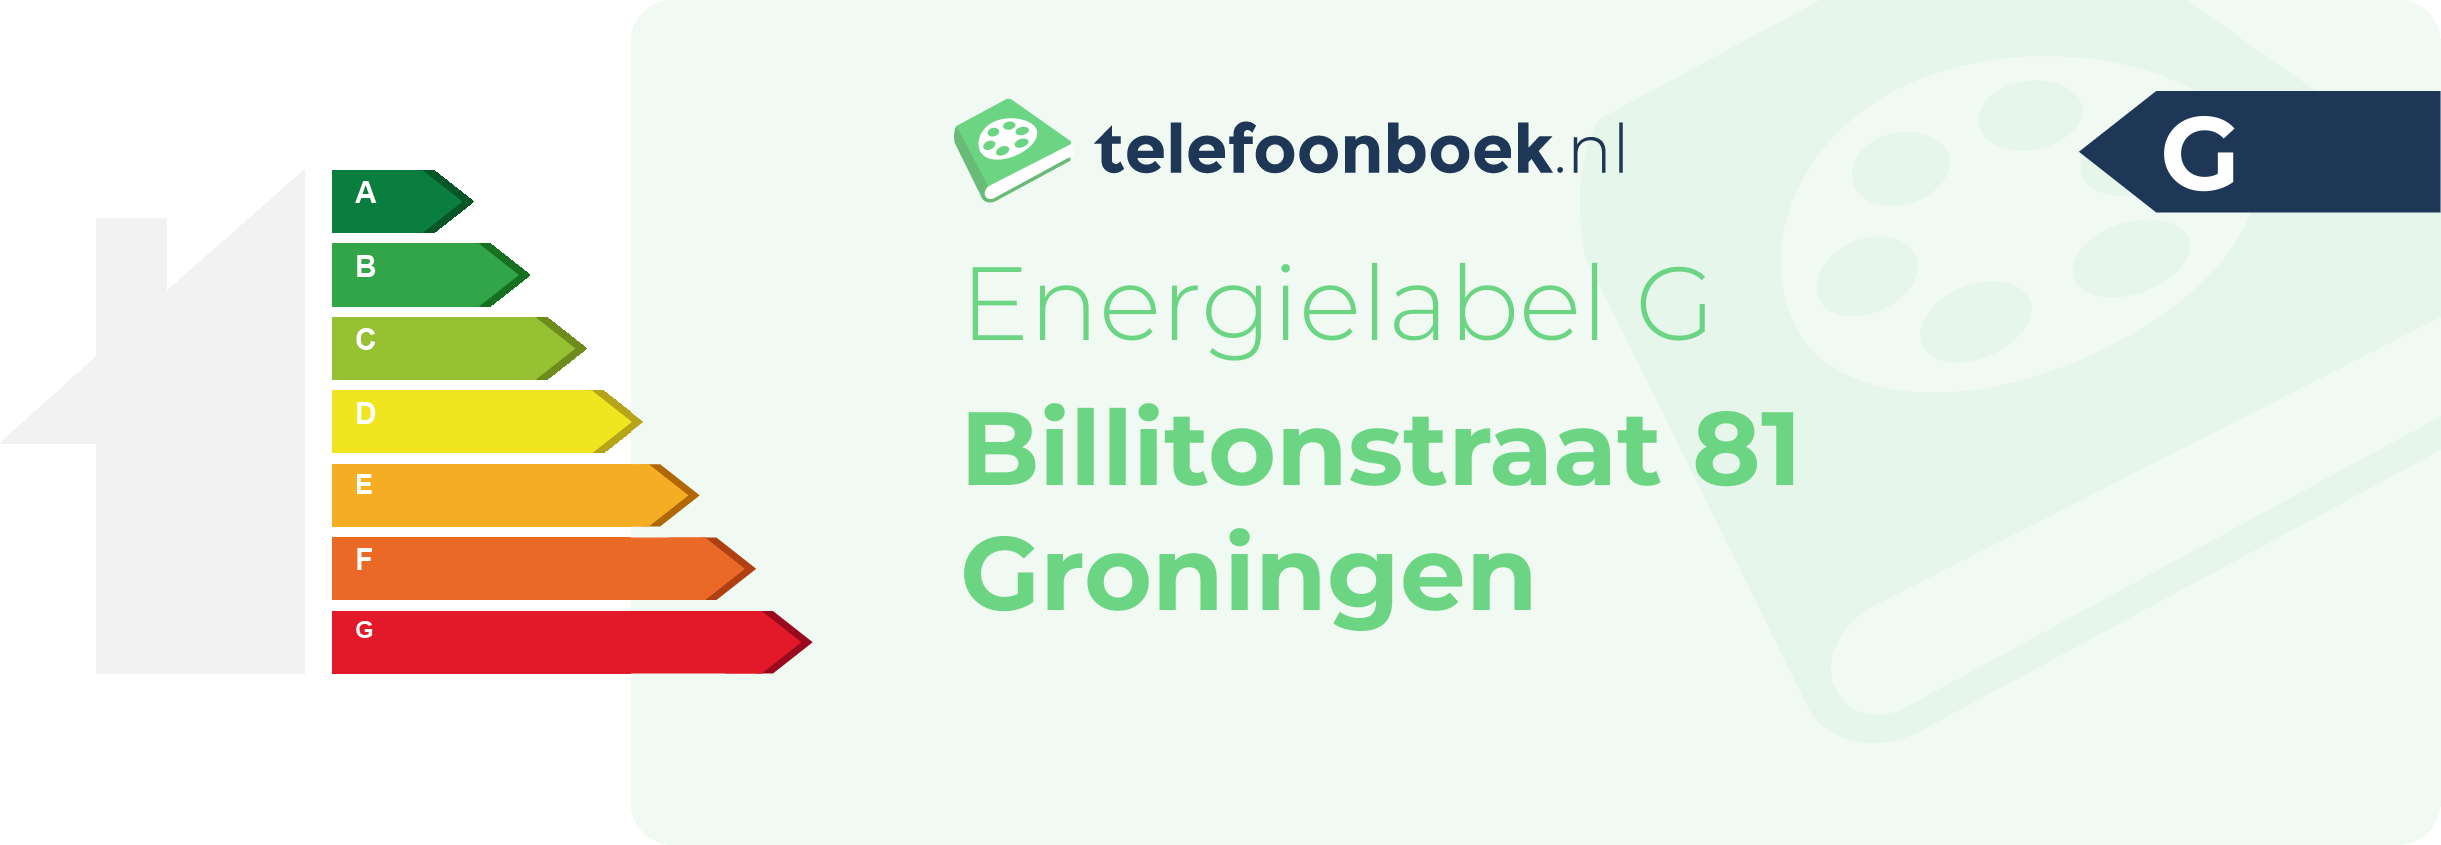 Energielabel Billitonstraat 81 Groningen